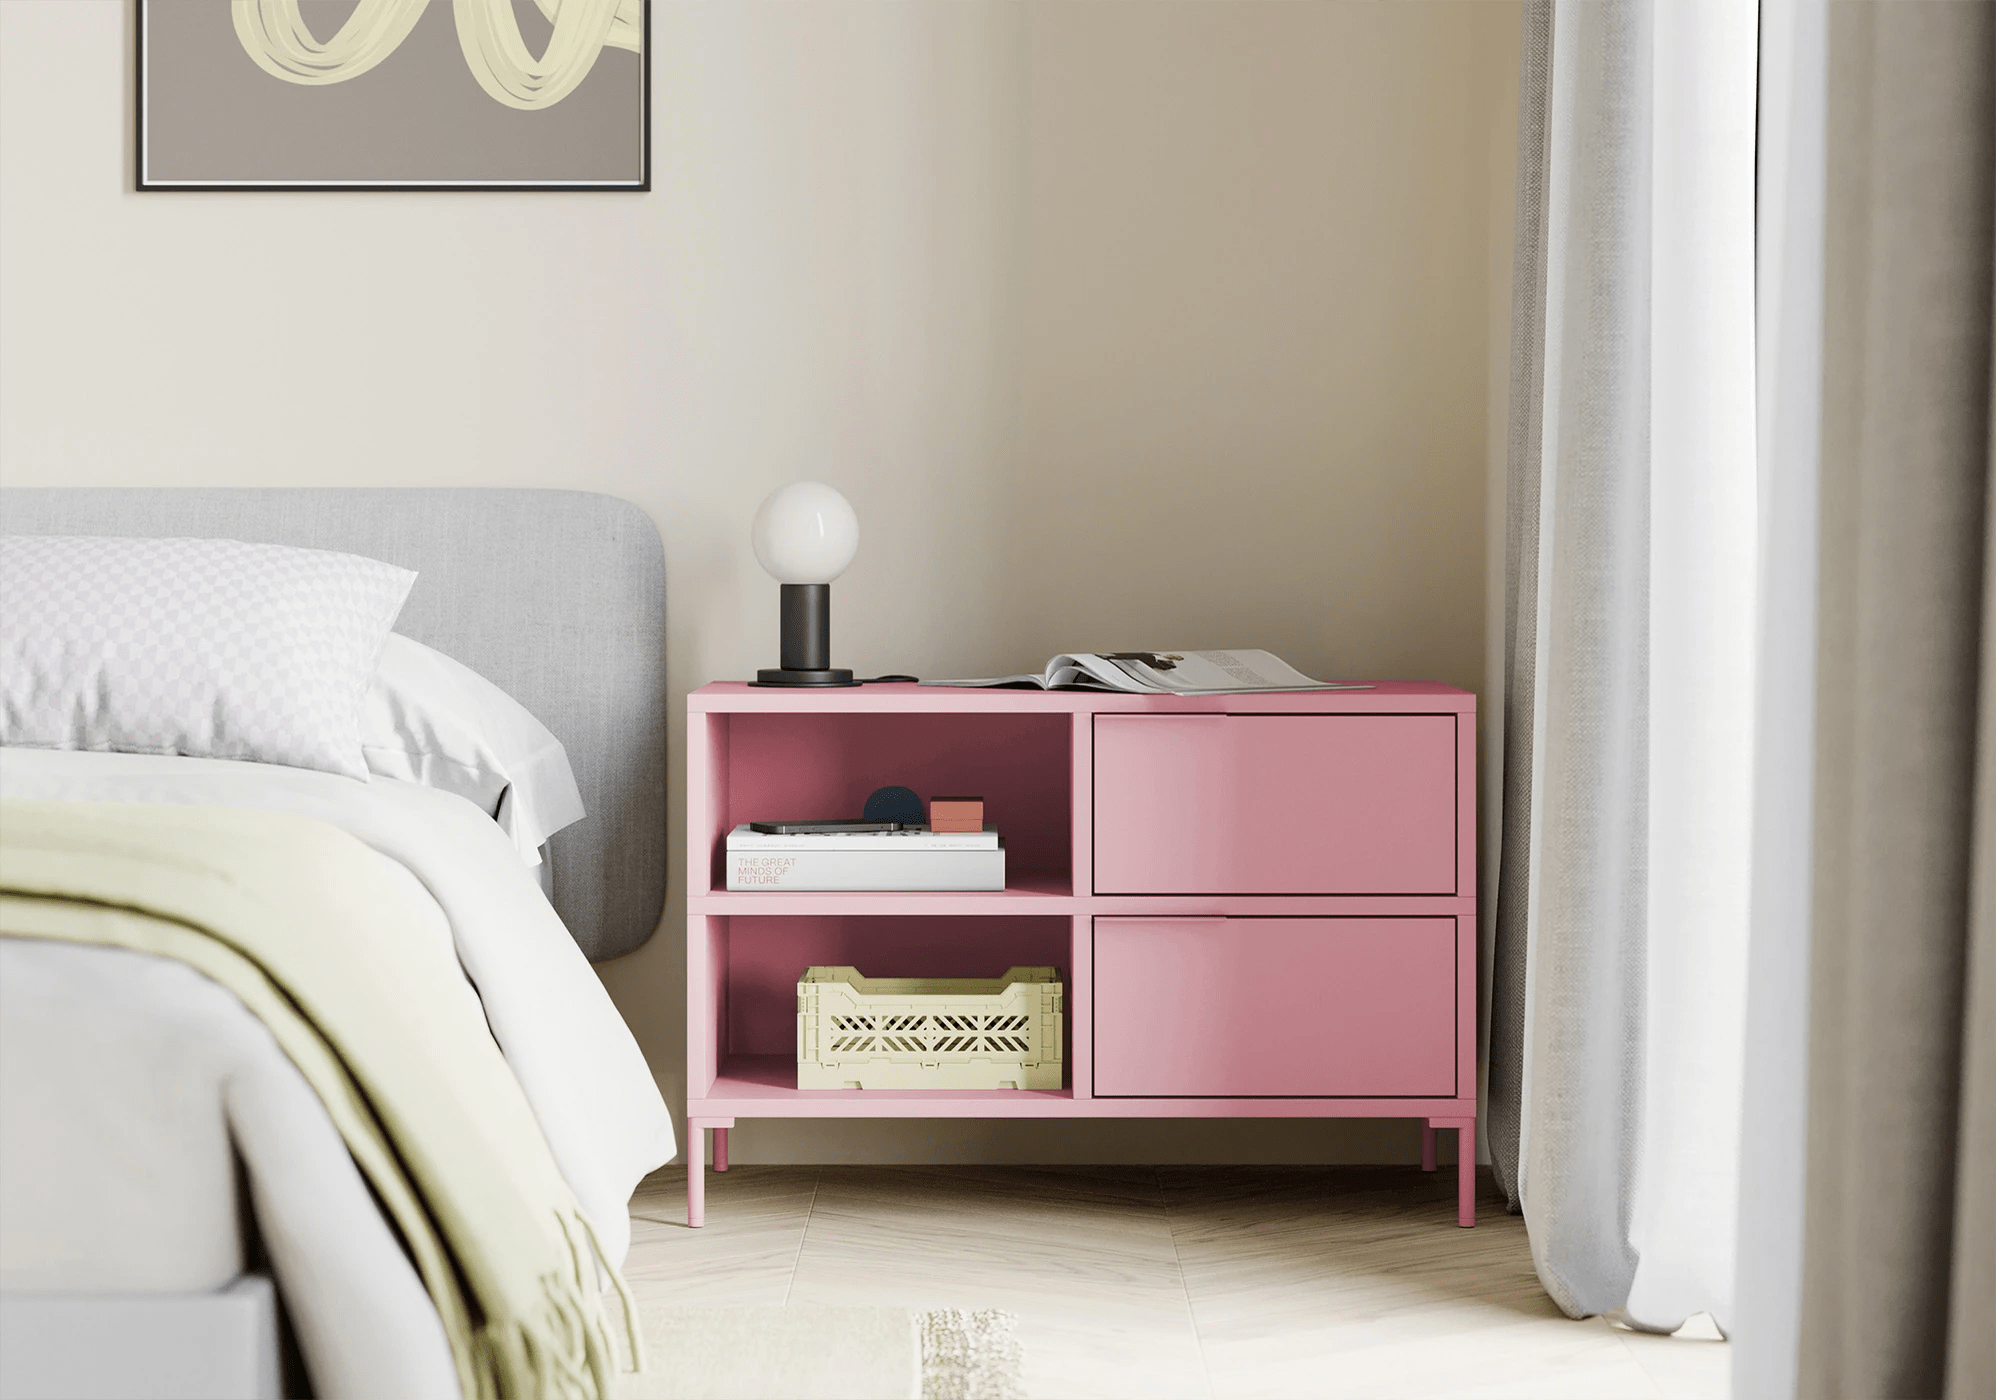 Duży reisinger pink stolik nocny z szufladami, panelami tylnymi oraz nóżkami - 78x53x40cm 3